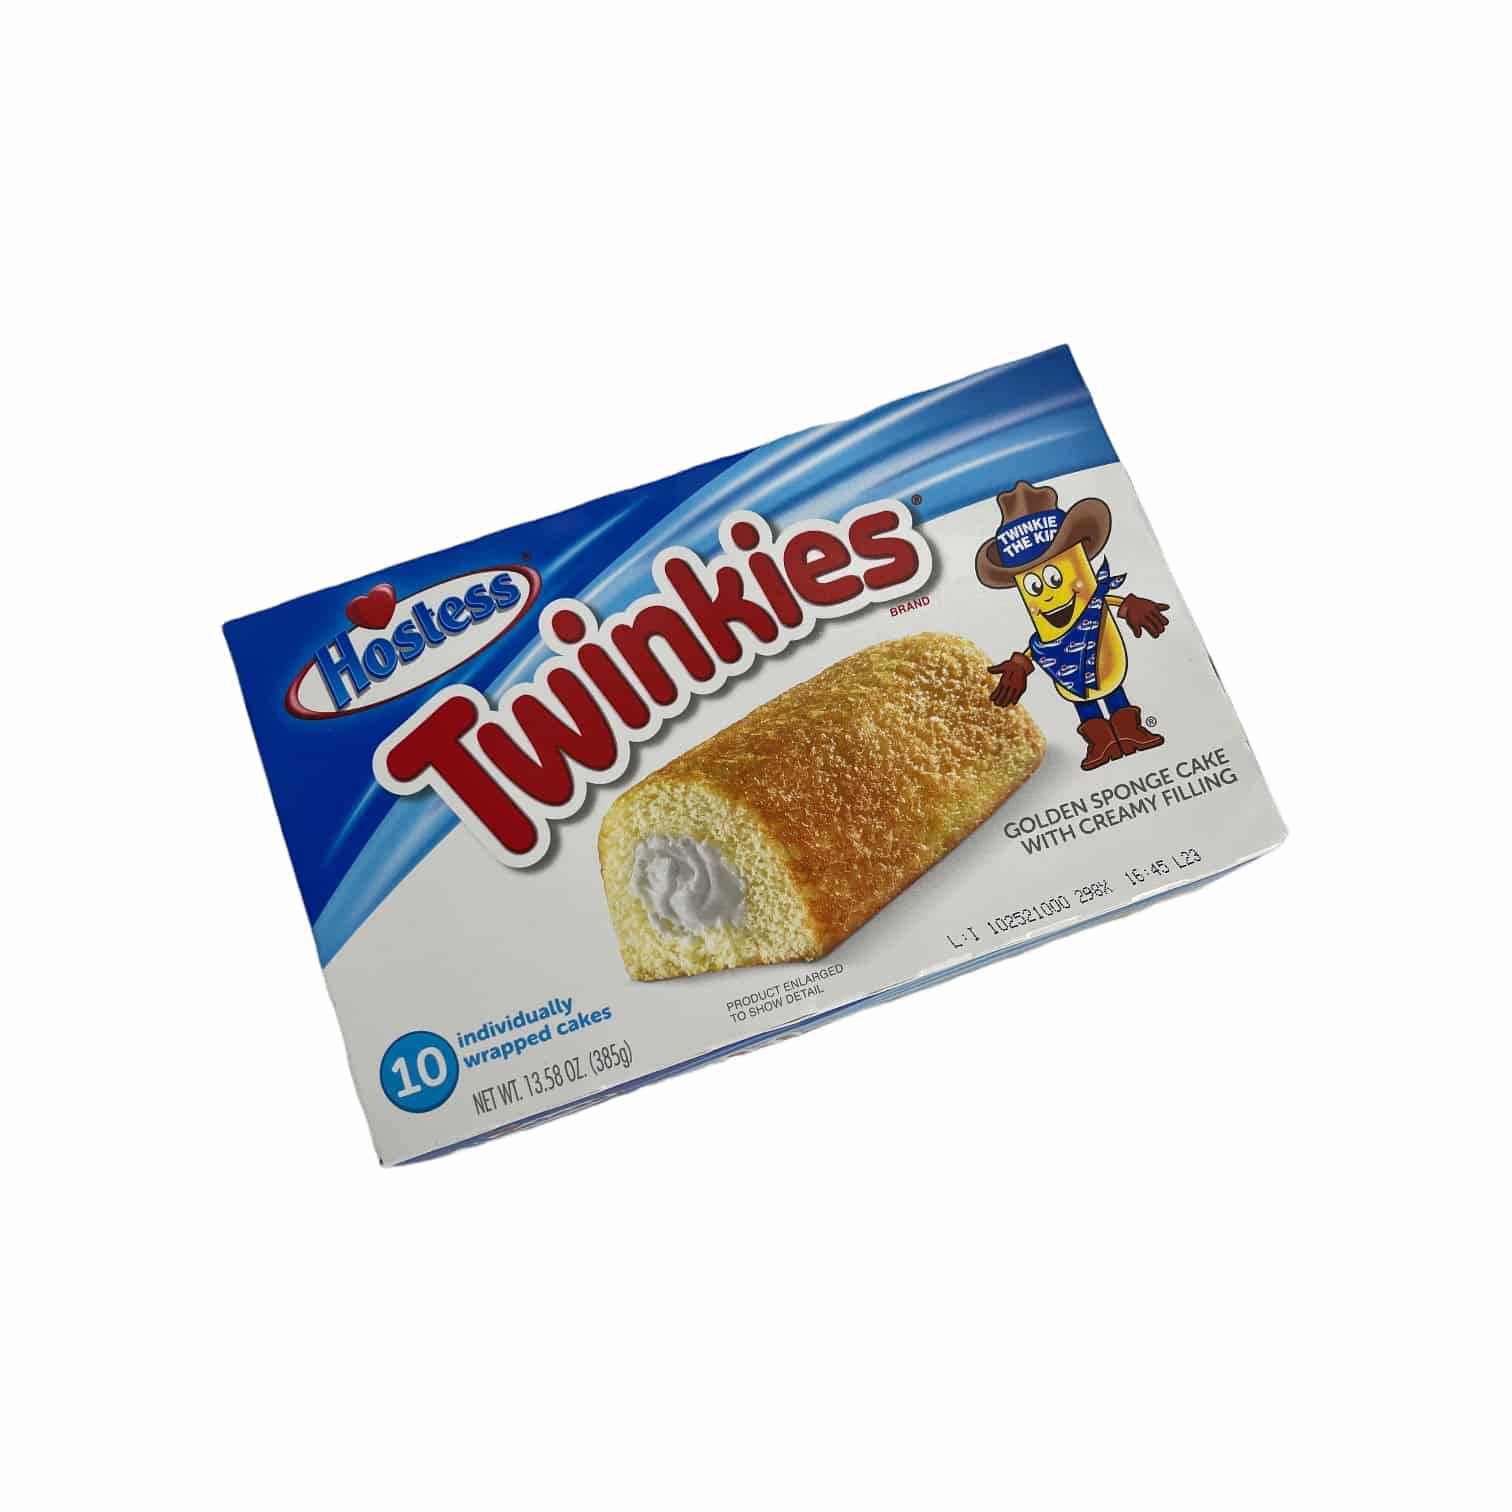 Hostess Twinkies Original 385g